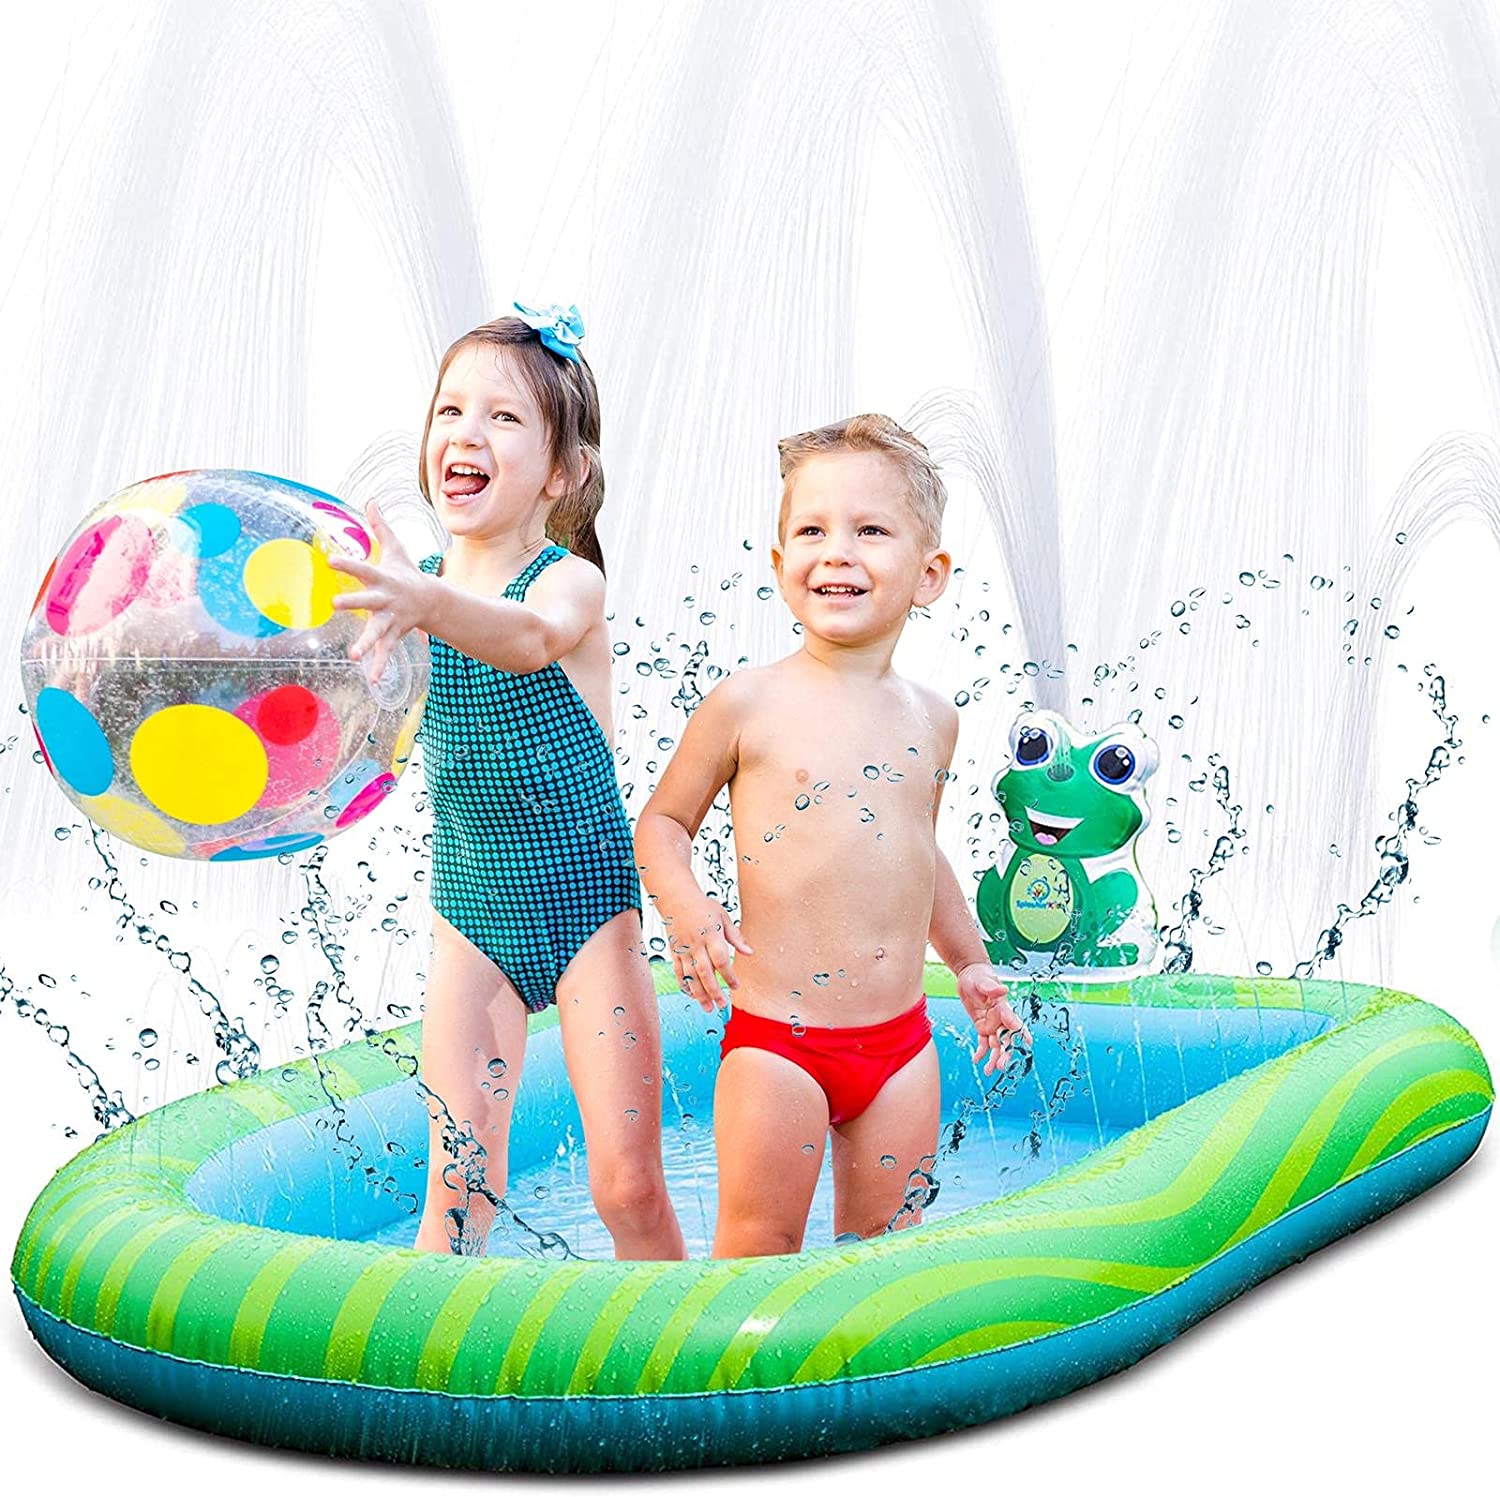 Splashin’kids Water Play Sprinkler Inflatable Baby Pool